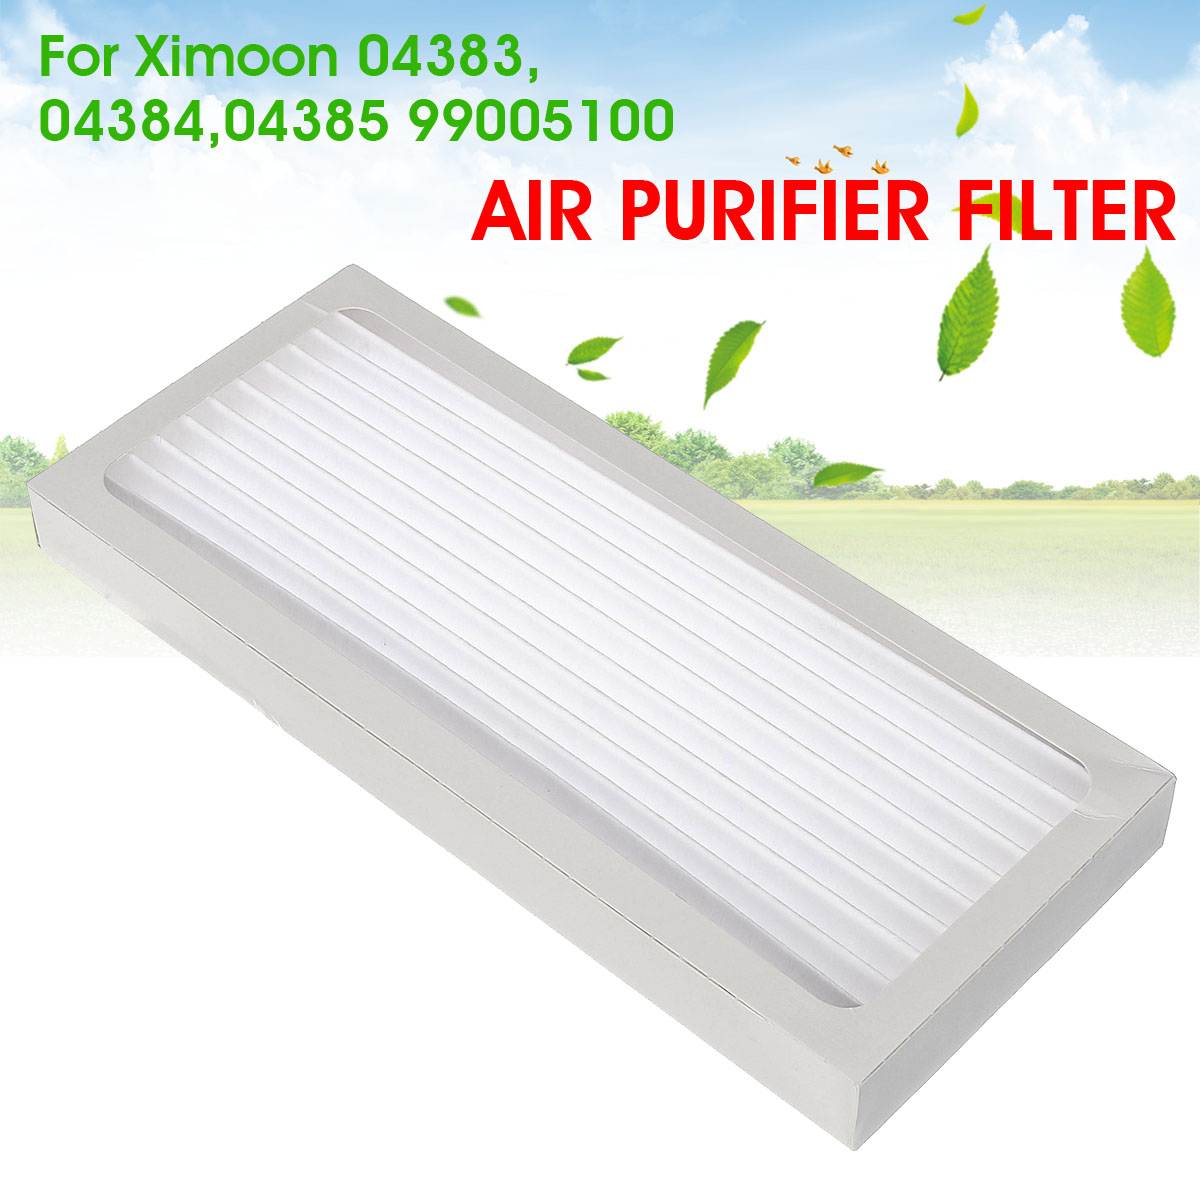 Air-Purifier-Filter-For-Ximoon-Hamilton-Beach-True-04383-04384-04385-990051000-1483853